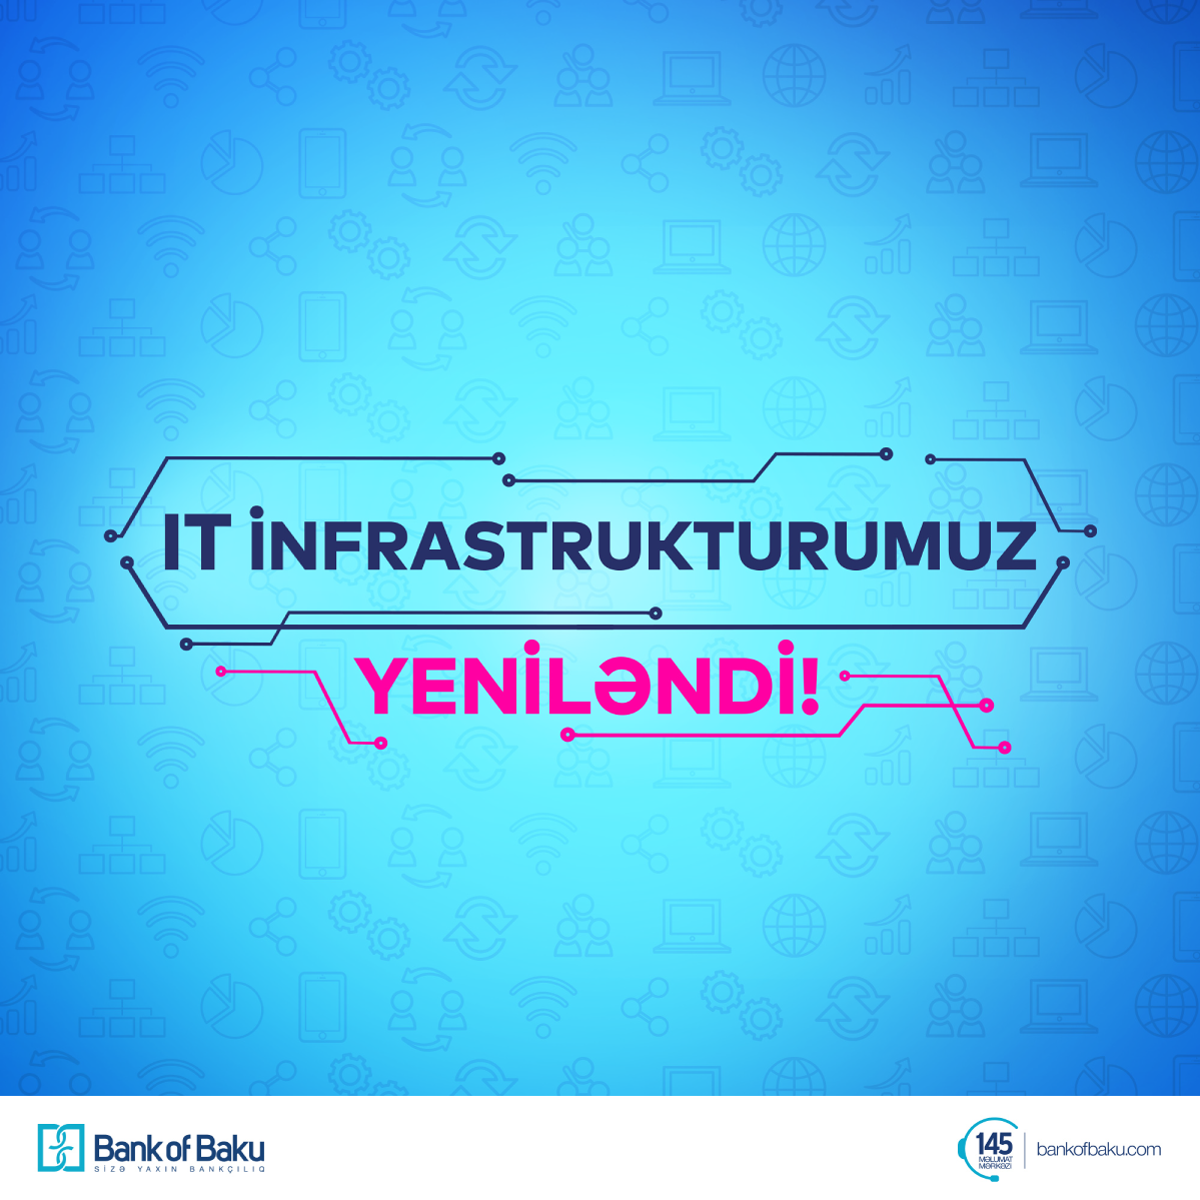 Bank of Baku IT infrastrukturunu təkmilləşdirir!